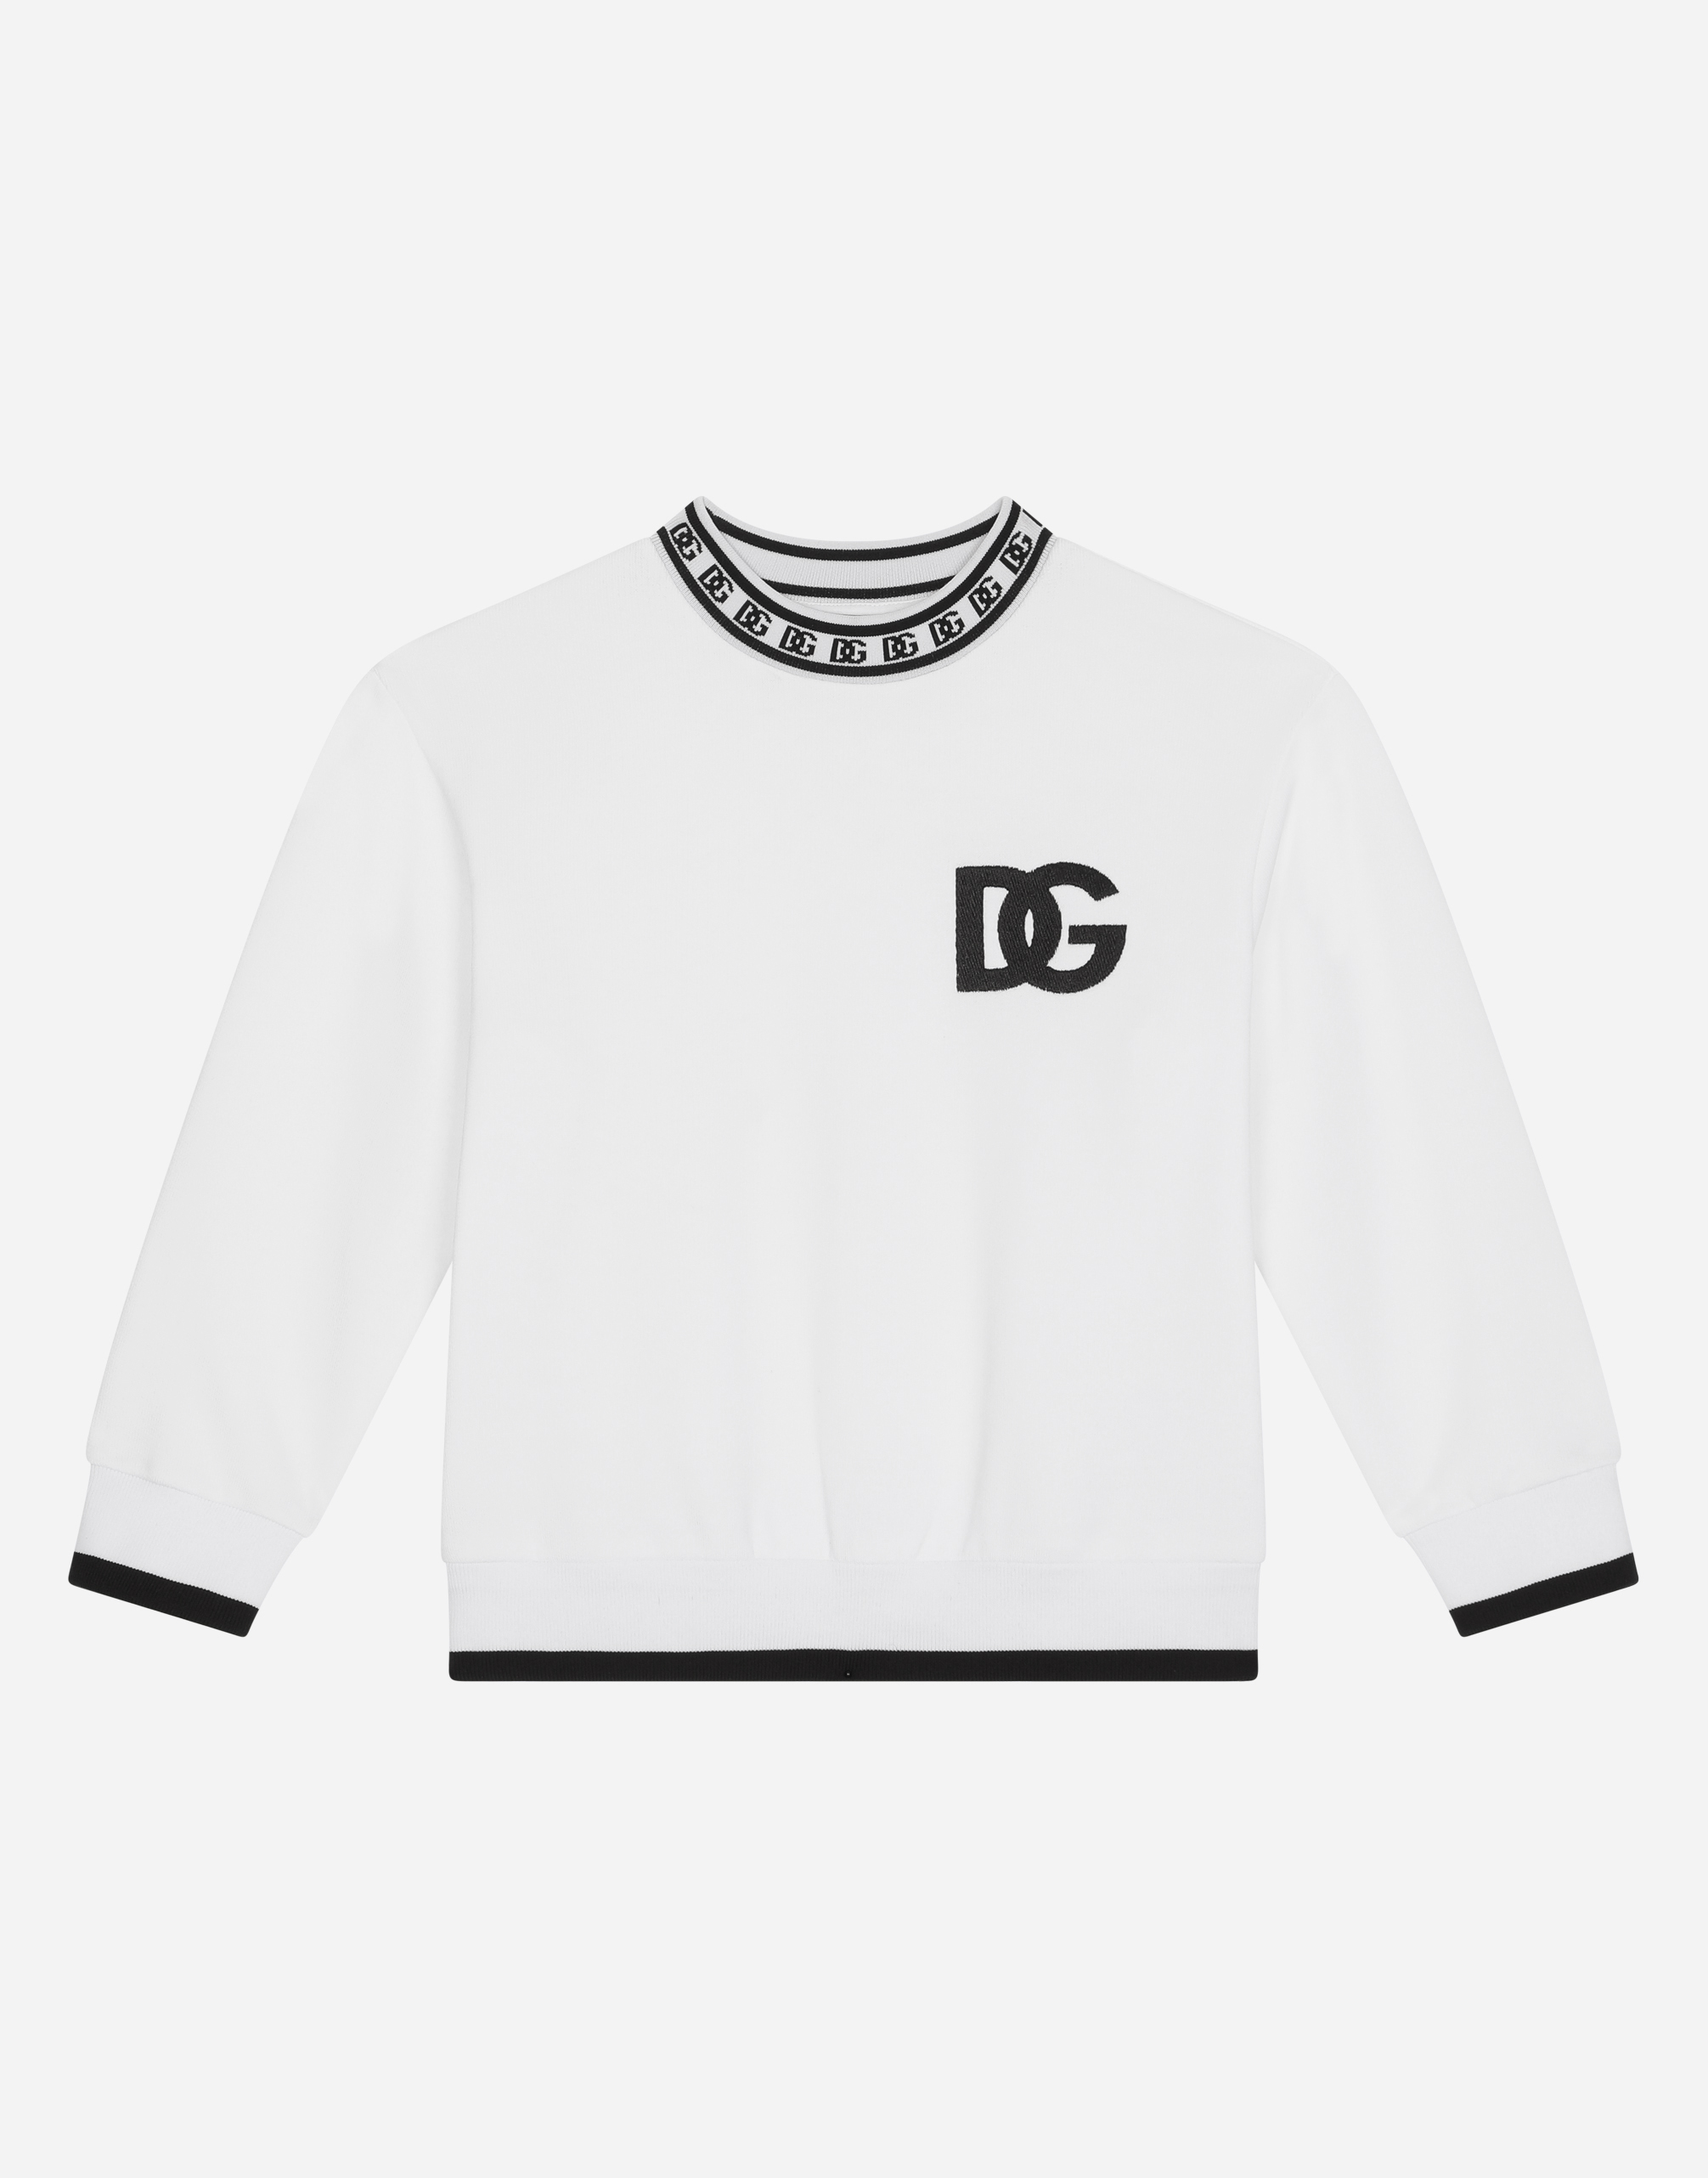 Jersey round-neck sweatshirt with DG logo print in White